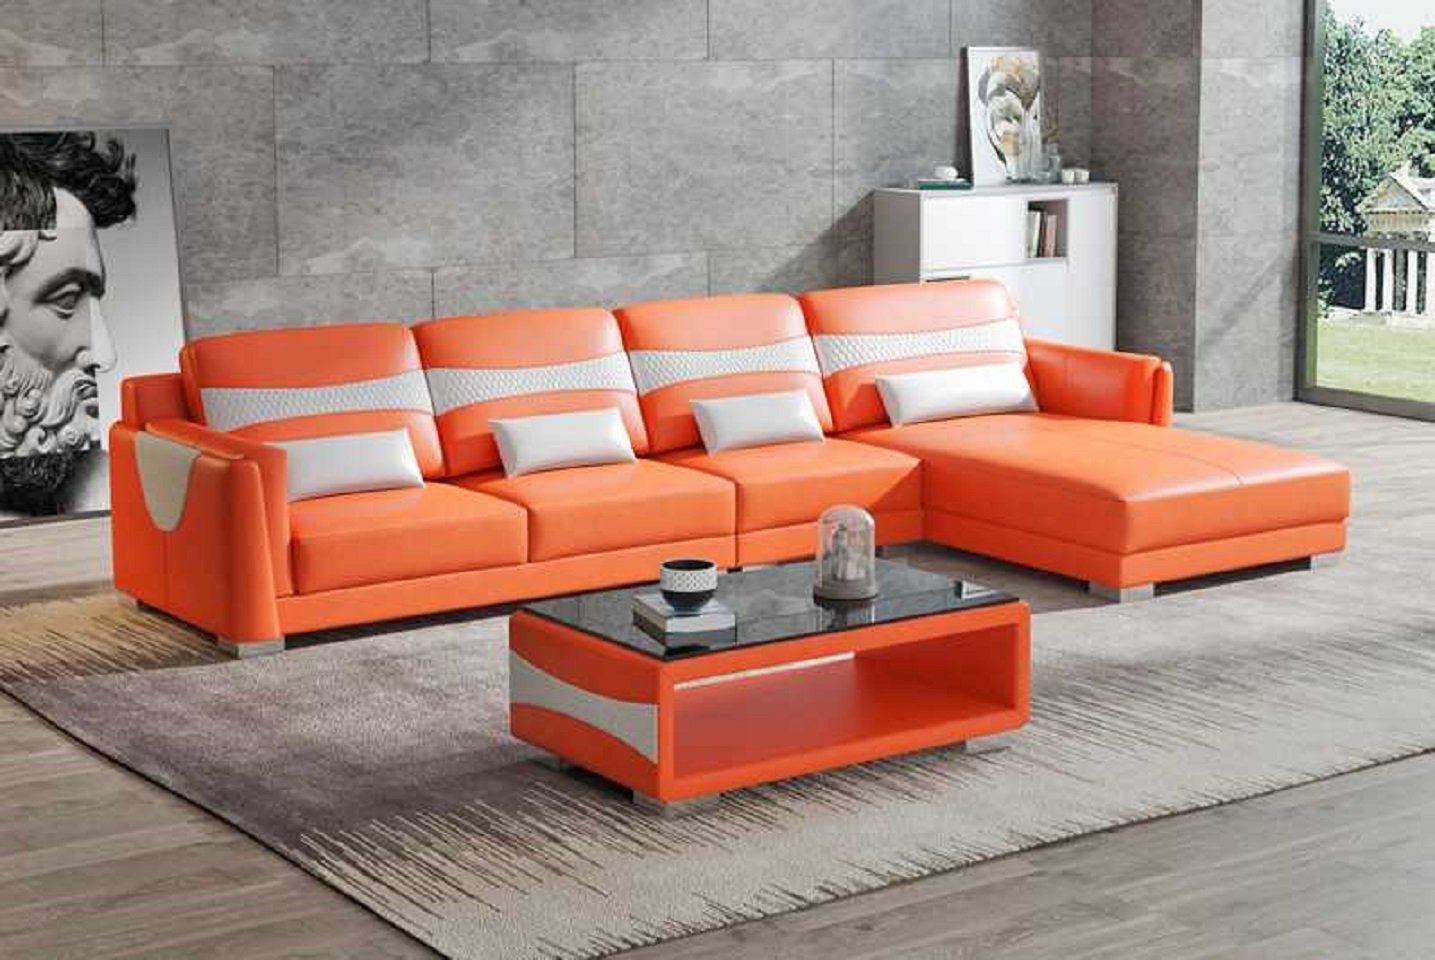 JVmoebel Ecksofa Luxus Eckgarnitur Ecksofa L Form Liege Couch Sofa Wohnzimmer Neu, 3 Teile, Made in Europe Orange/Weiß | Ecksofas